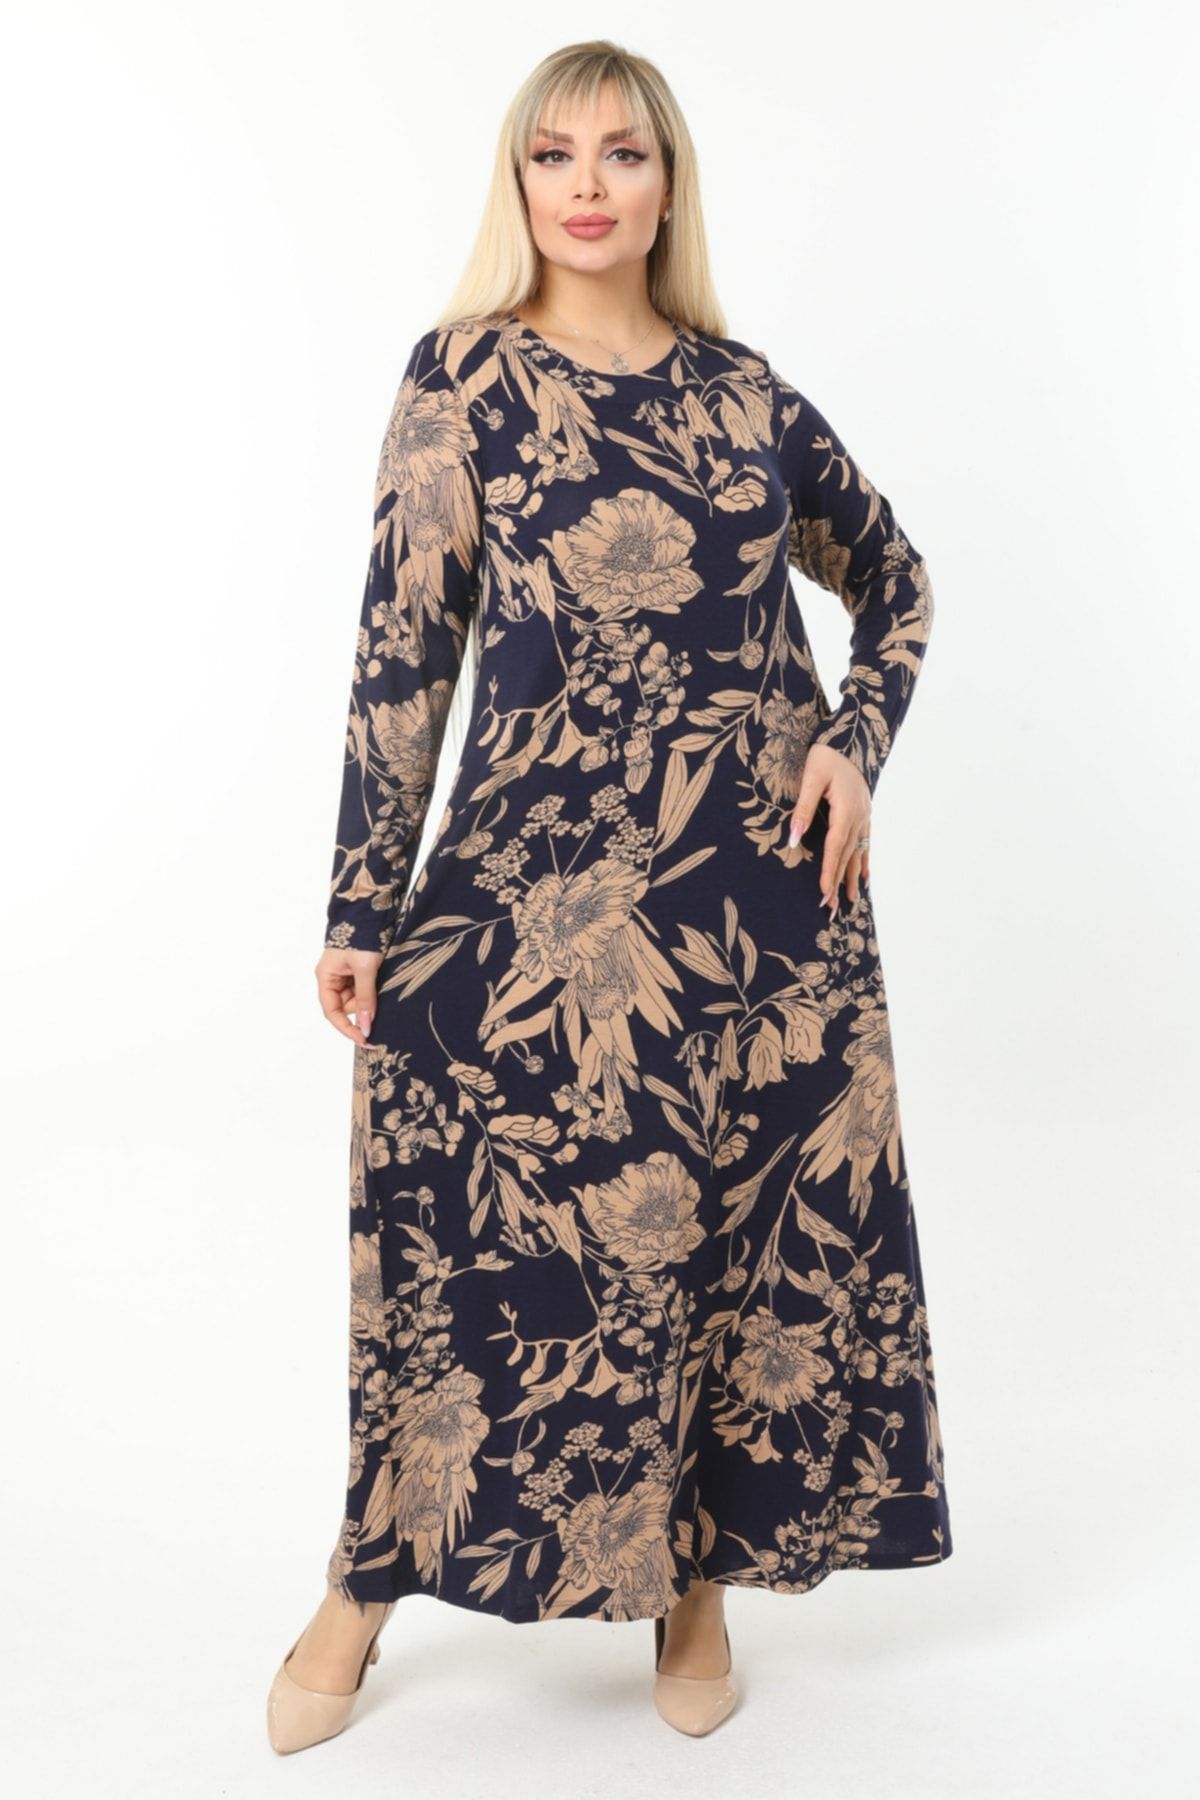 HERAXL Kadın Lacivert Vizon Yaprak Desenli Yakası Pervazlı Büyük Beden Viskon Uzun Elbise